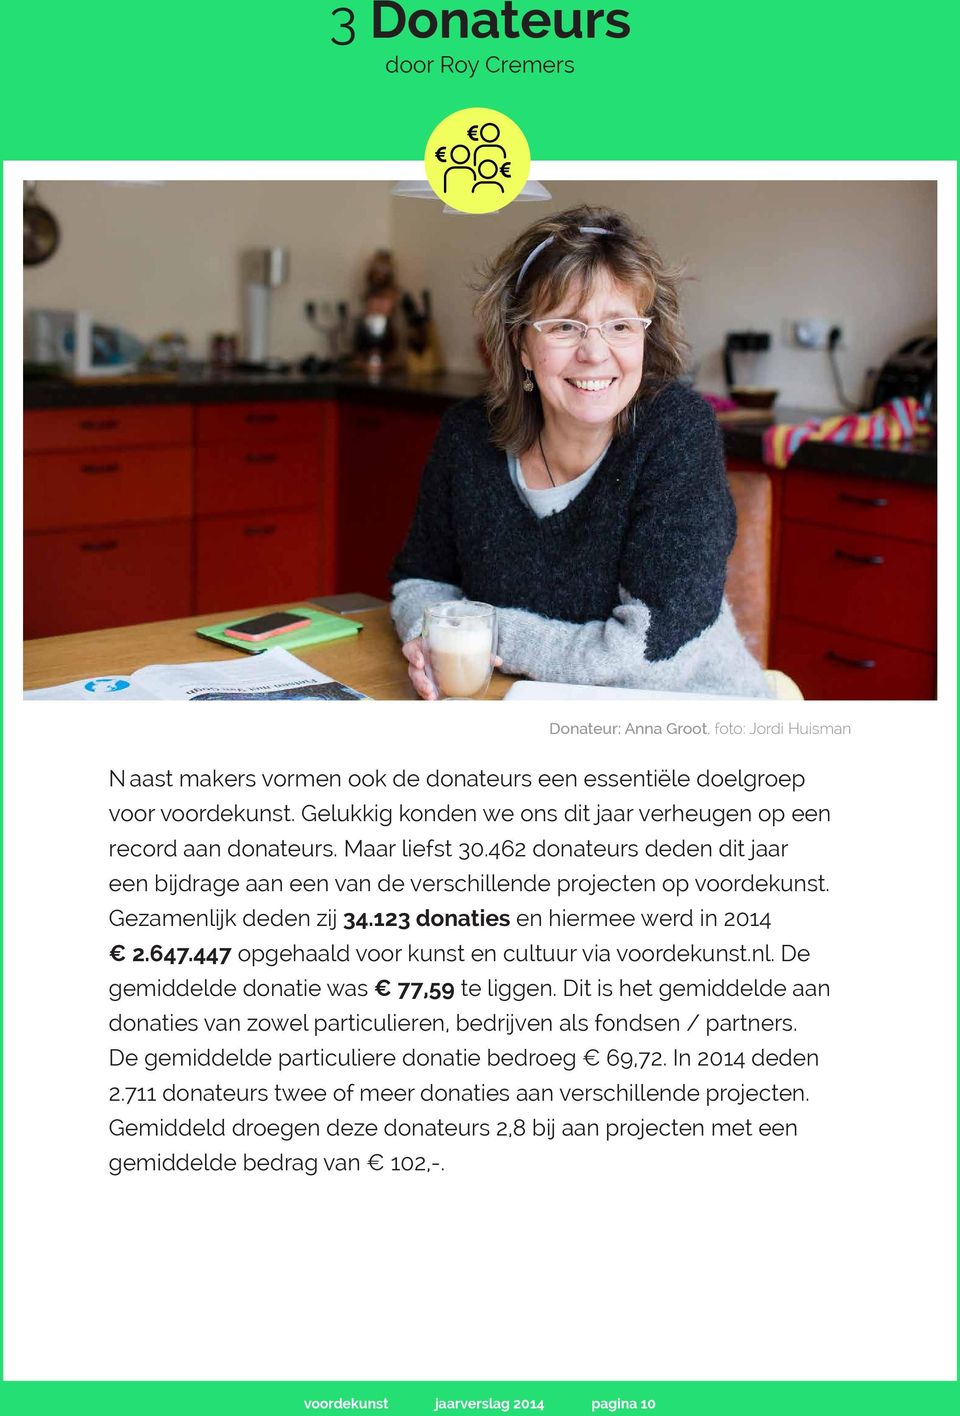 Gezamenlijk deden zij 34.123 donaties en hiermee werd in 2014 2.647.447 opgehaald voor kunst en cultuur via voordekunst.nl. De gemiddelde donatie was 77,59 te liggen.